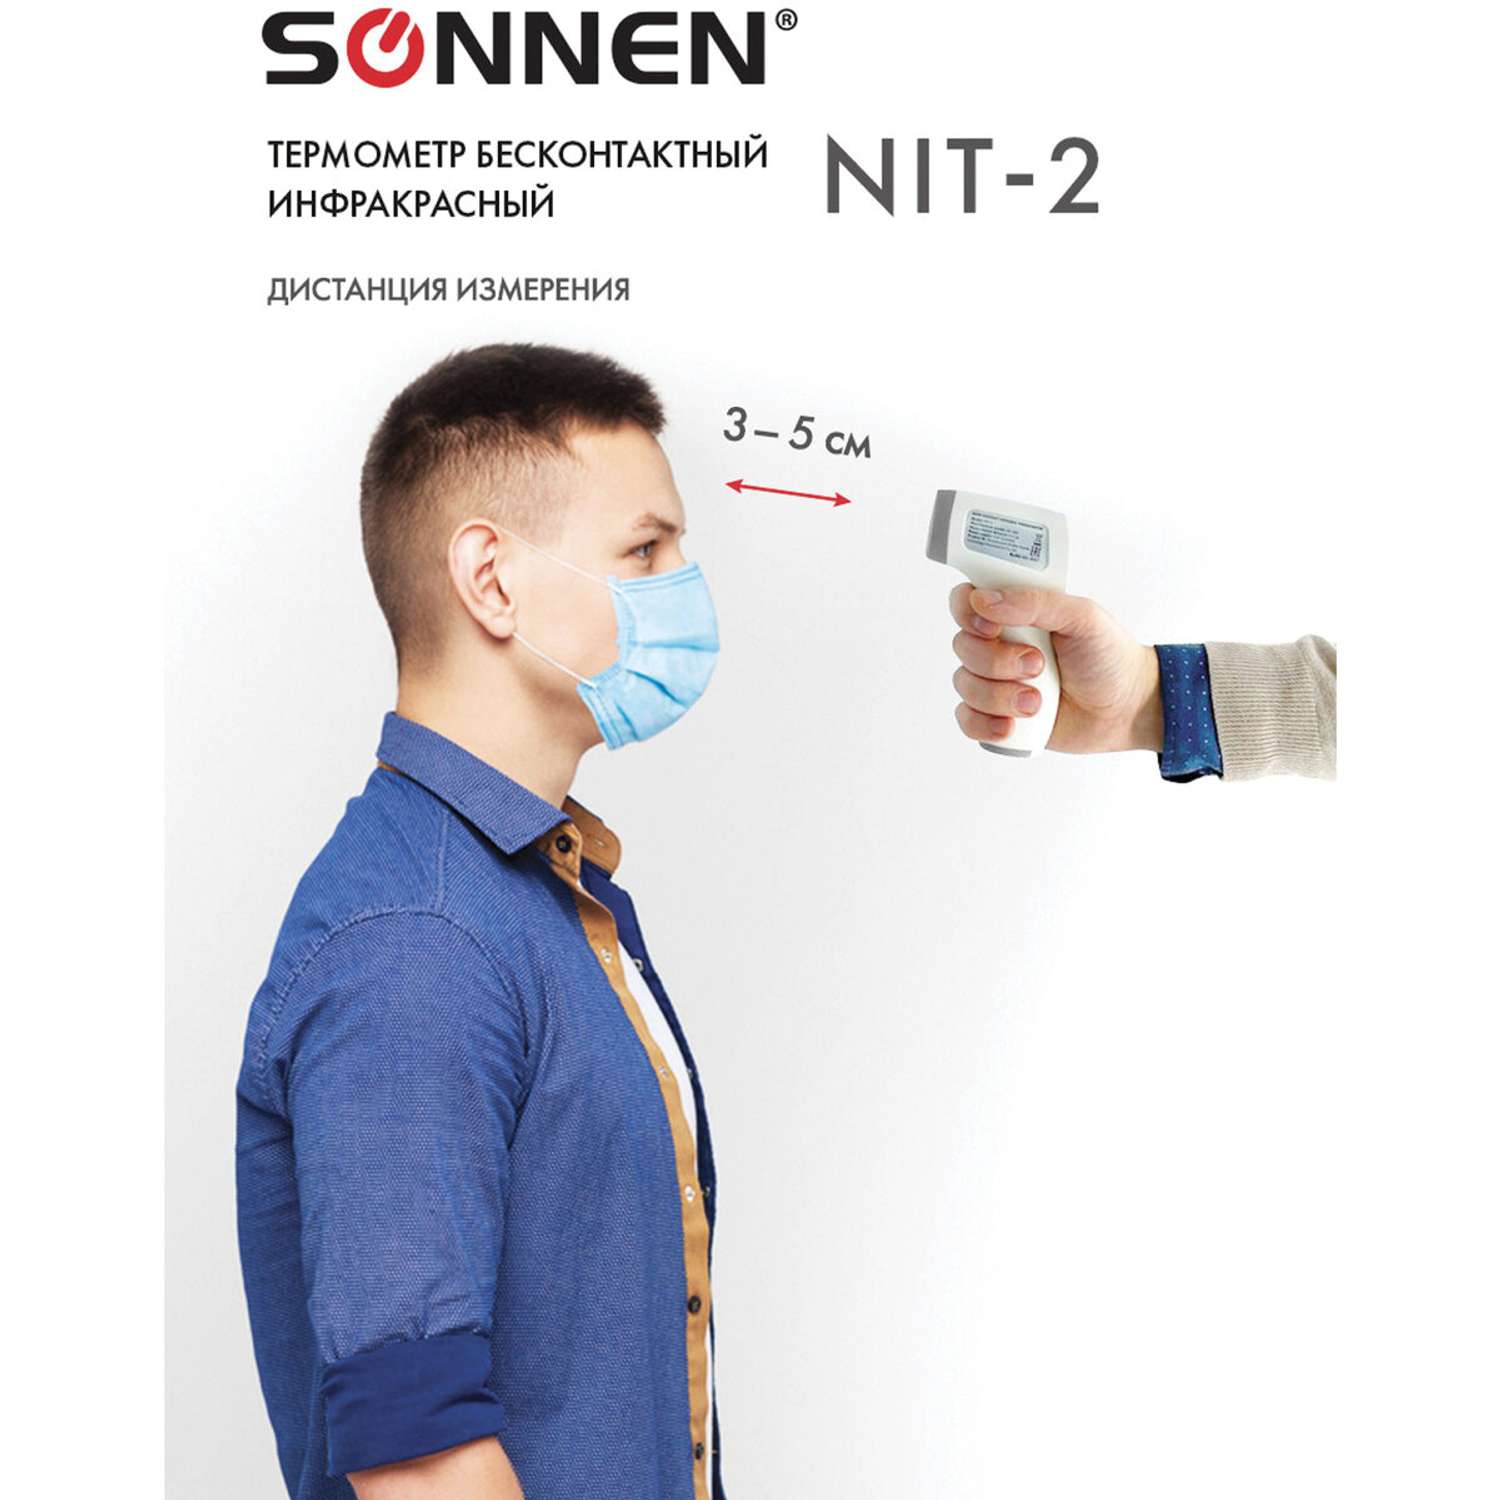 Термометр Sonnen бесконтактный инфракрасный NIT-2 GP-300 электронный - фото 5